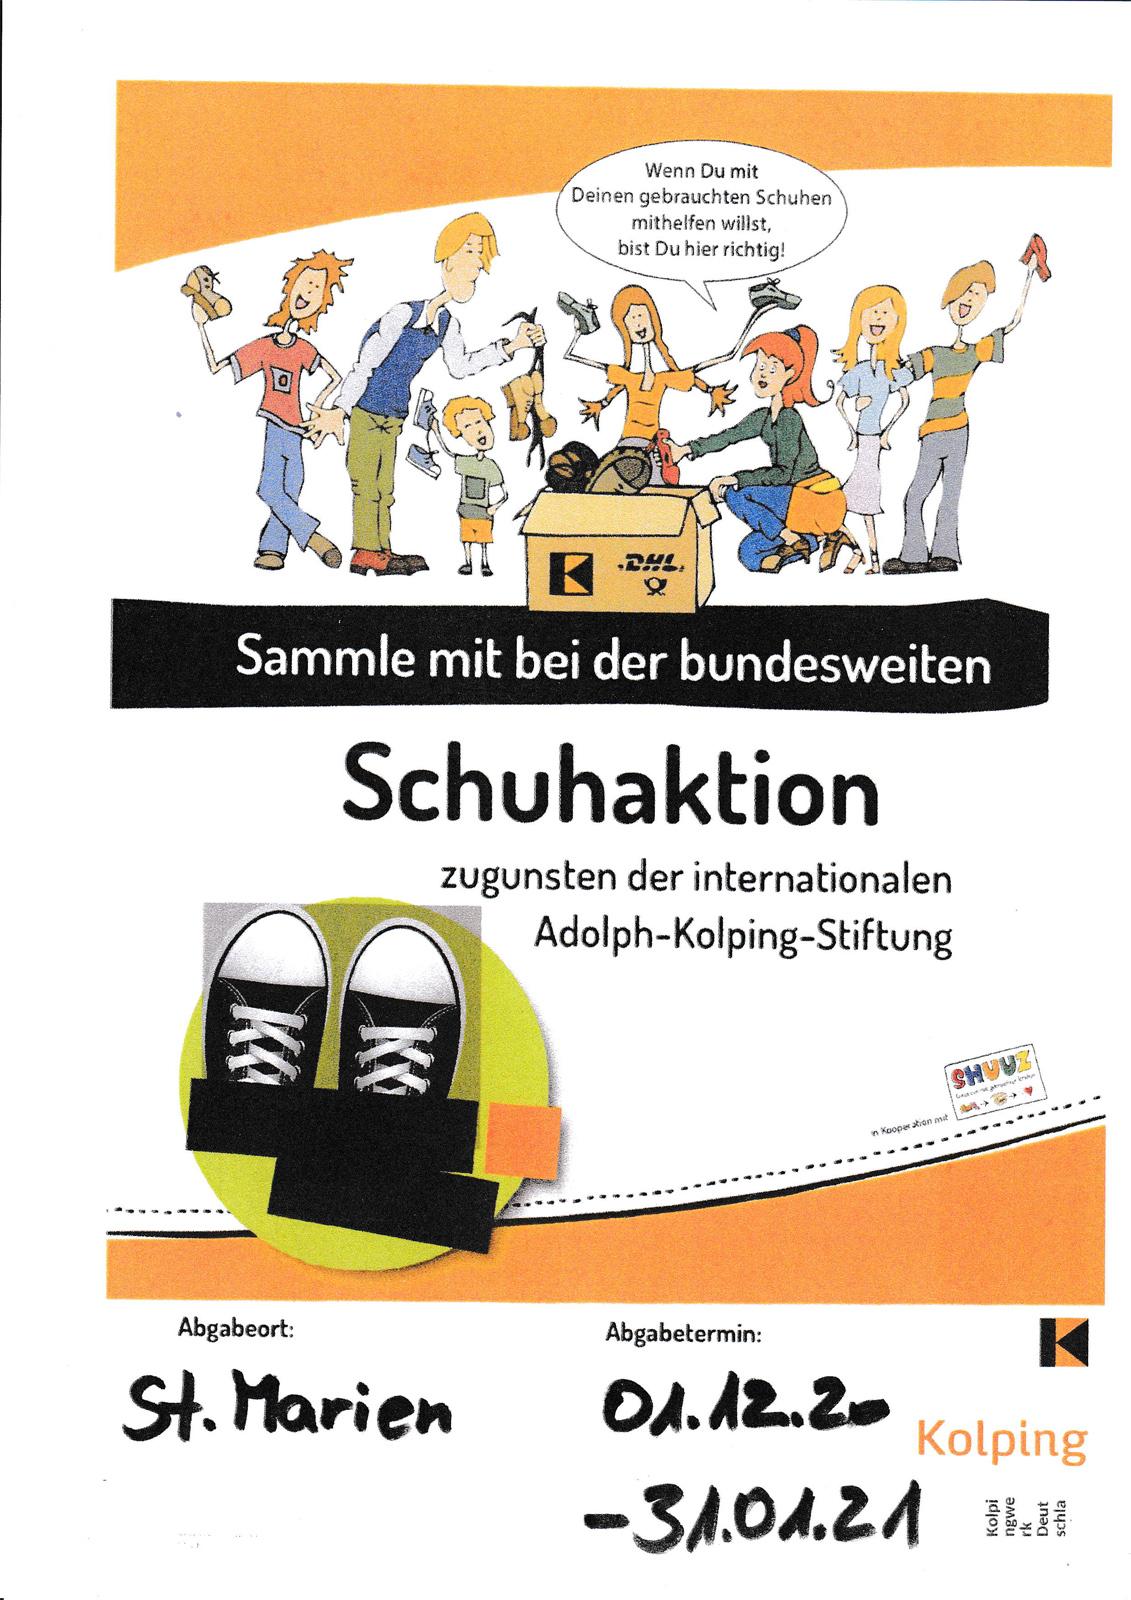 Schuhaktion (c) Kolping.Deutschland